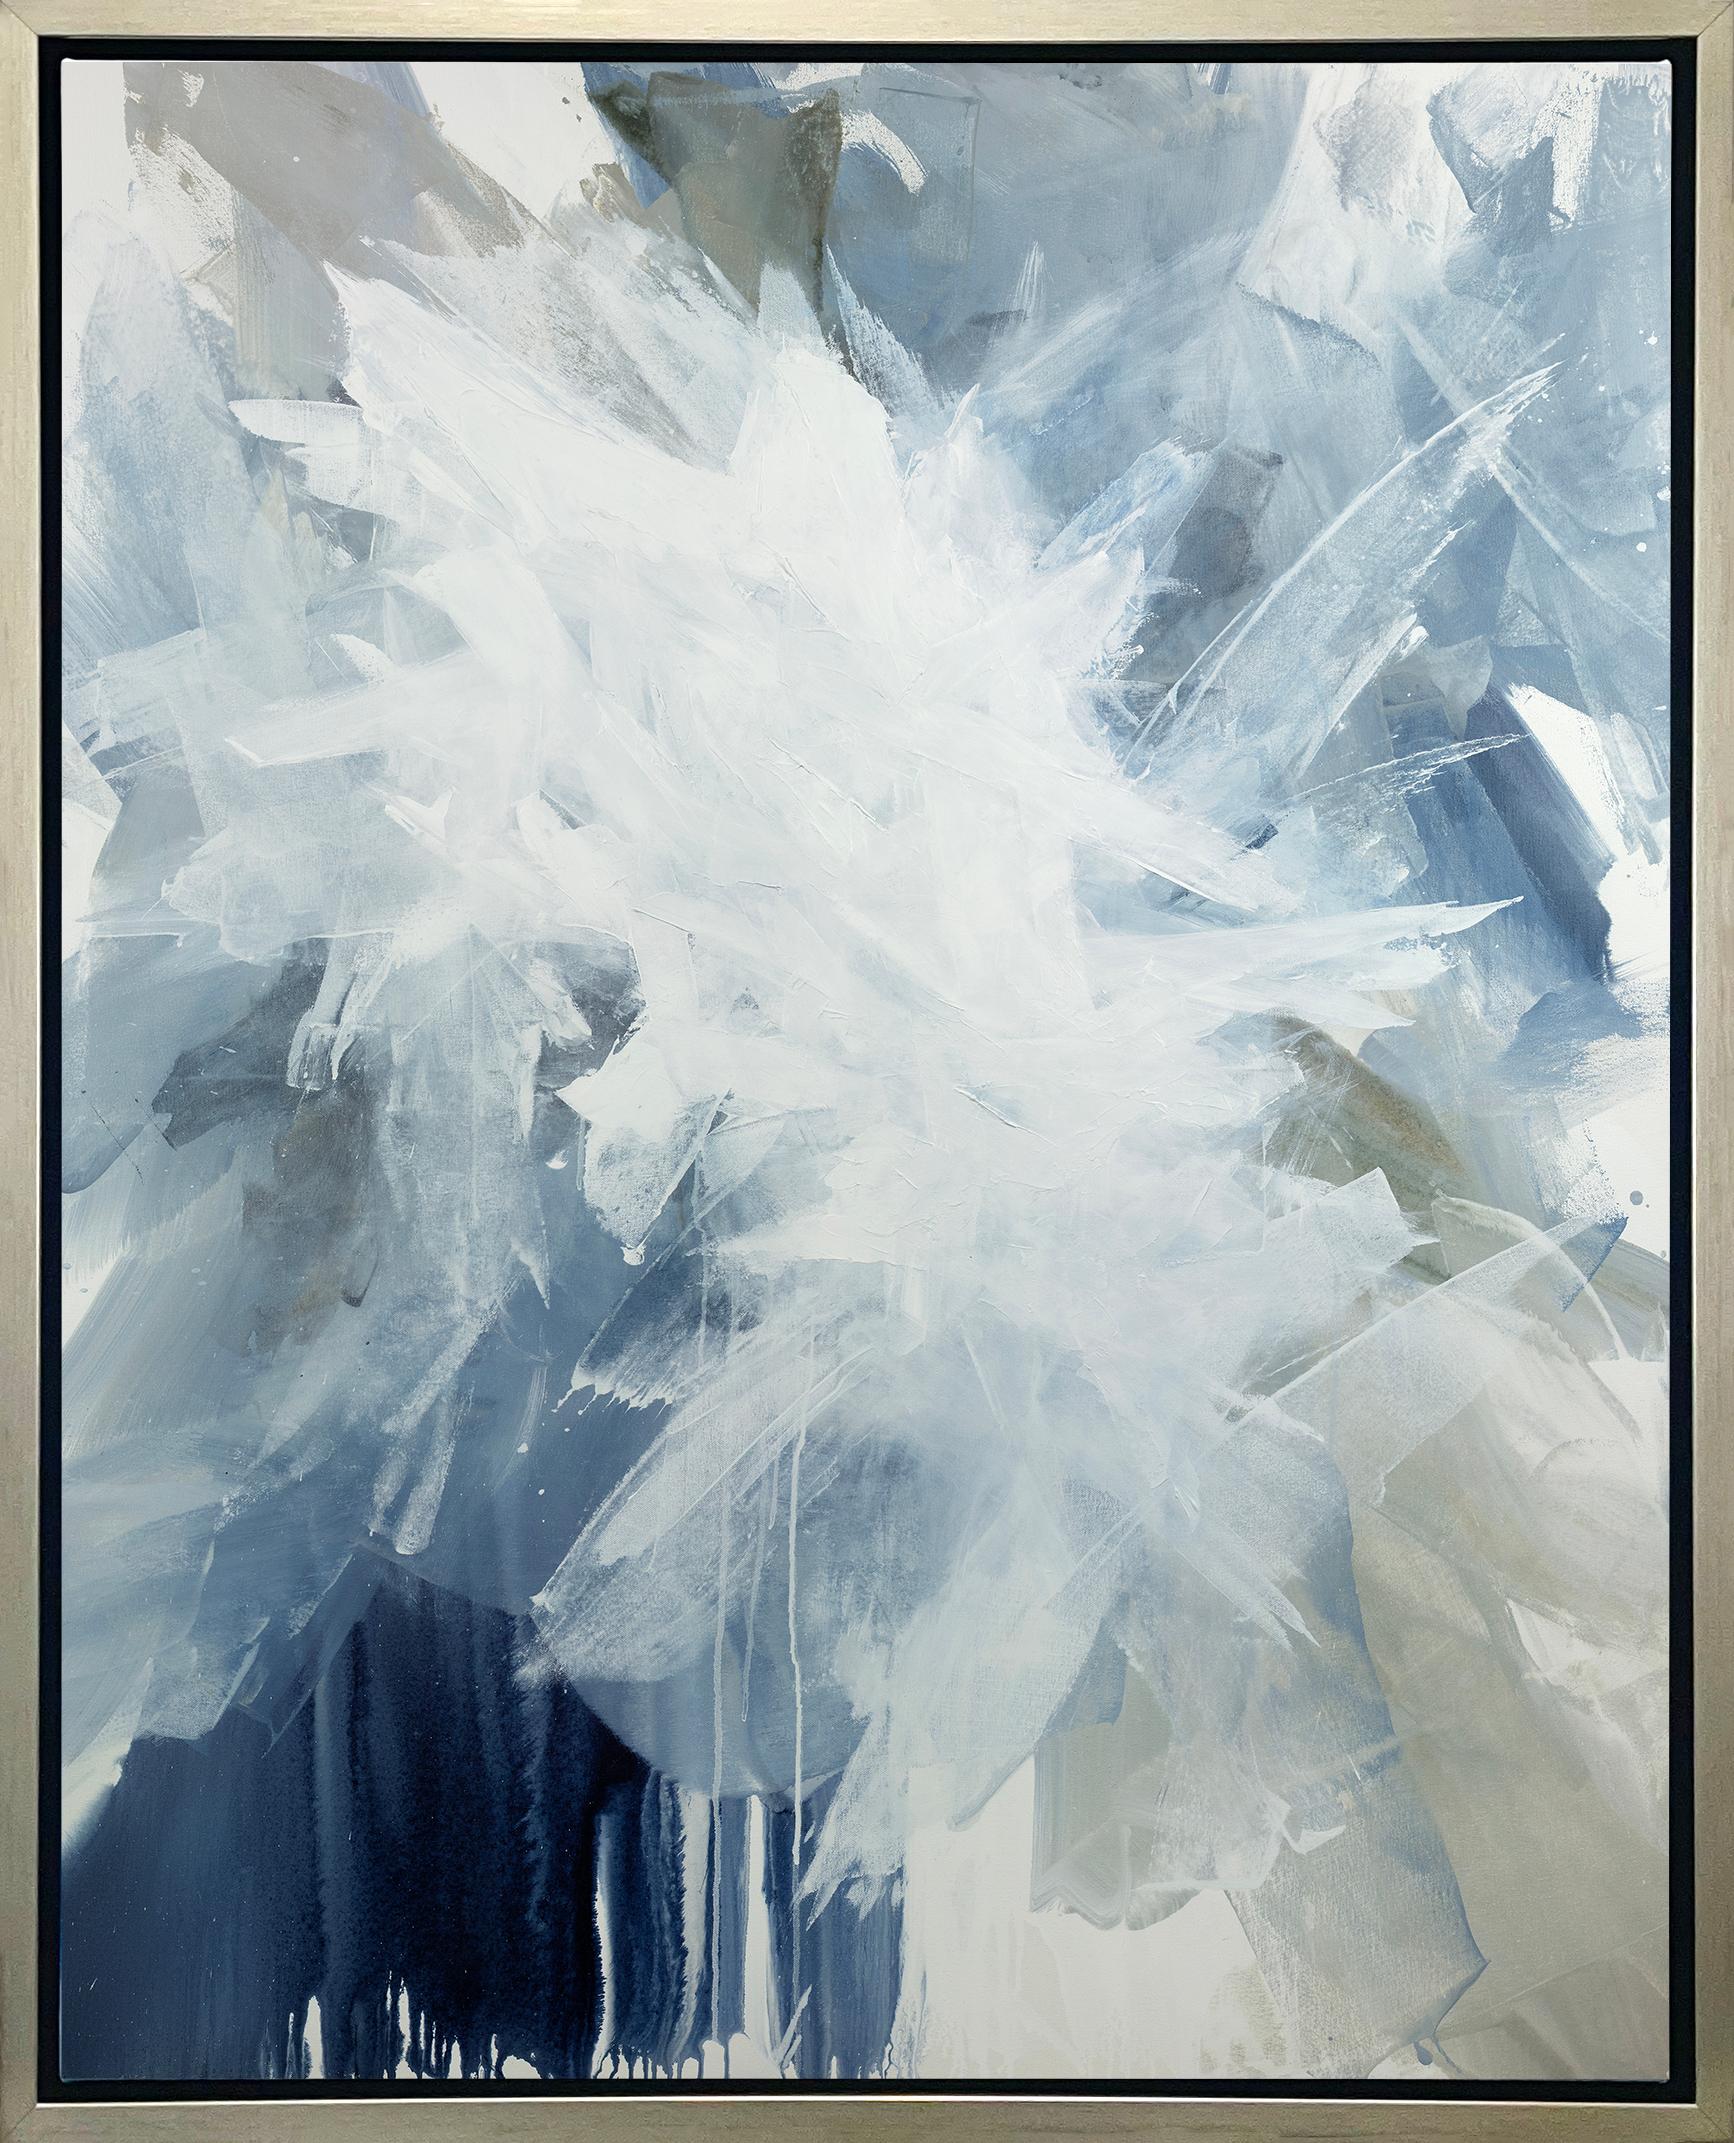 Abstract Print Teodora Guererra - « White Dove », imprimé giclée encadré en édition limitée, 76,2 cm x 60,9 cm